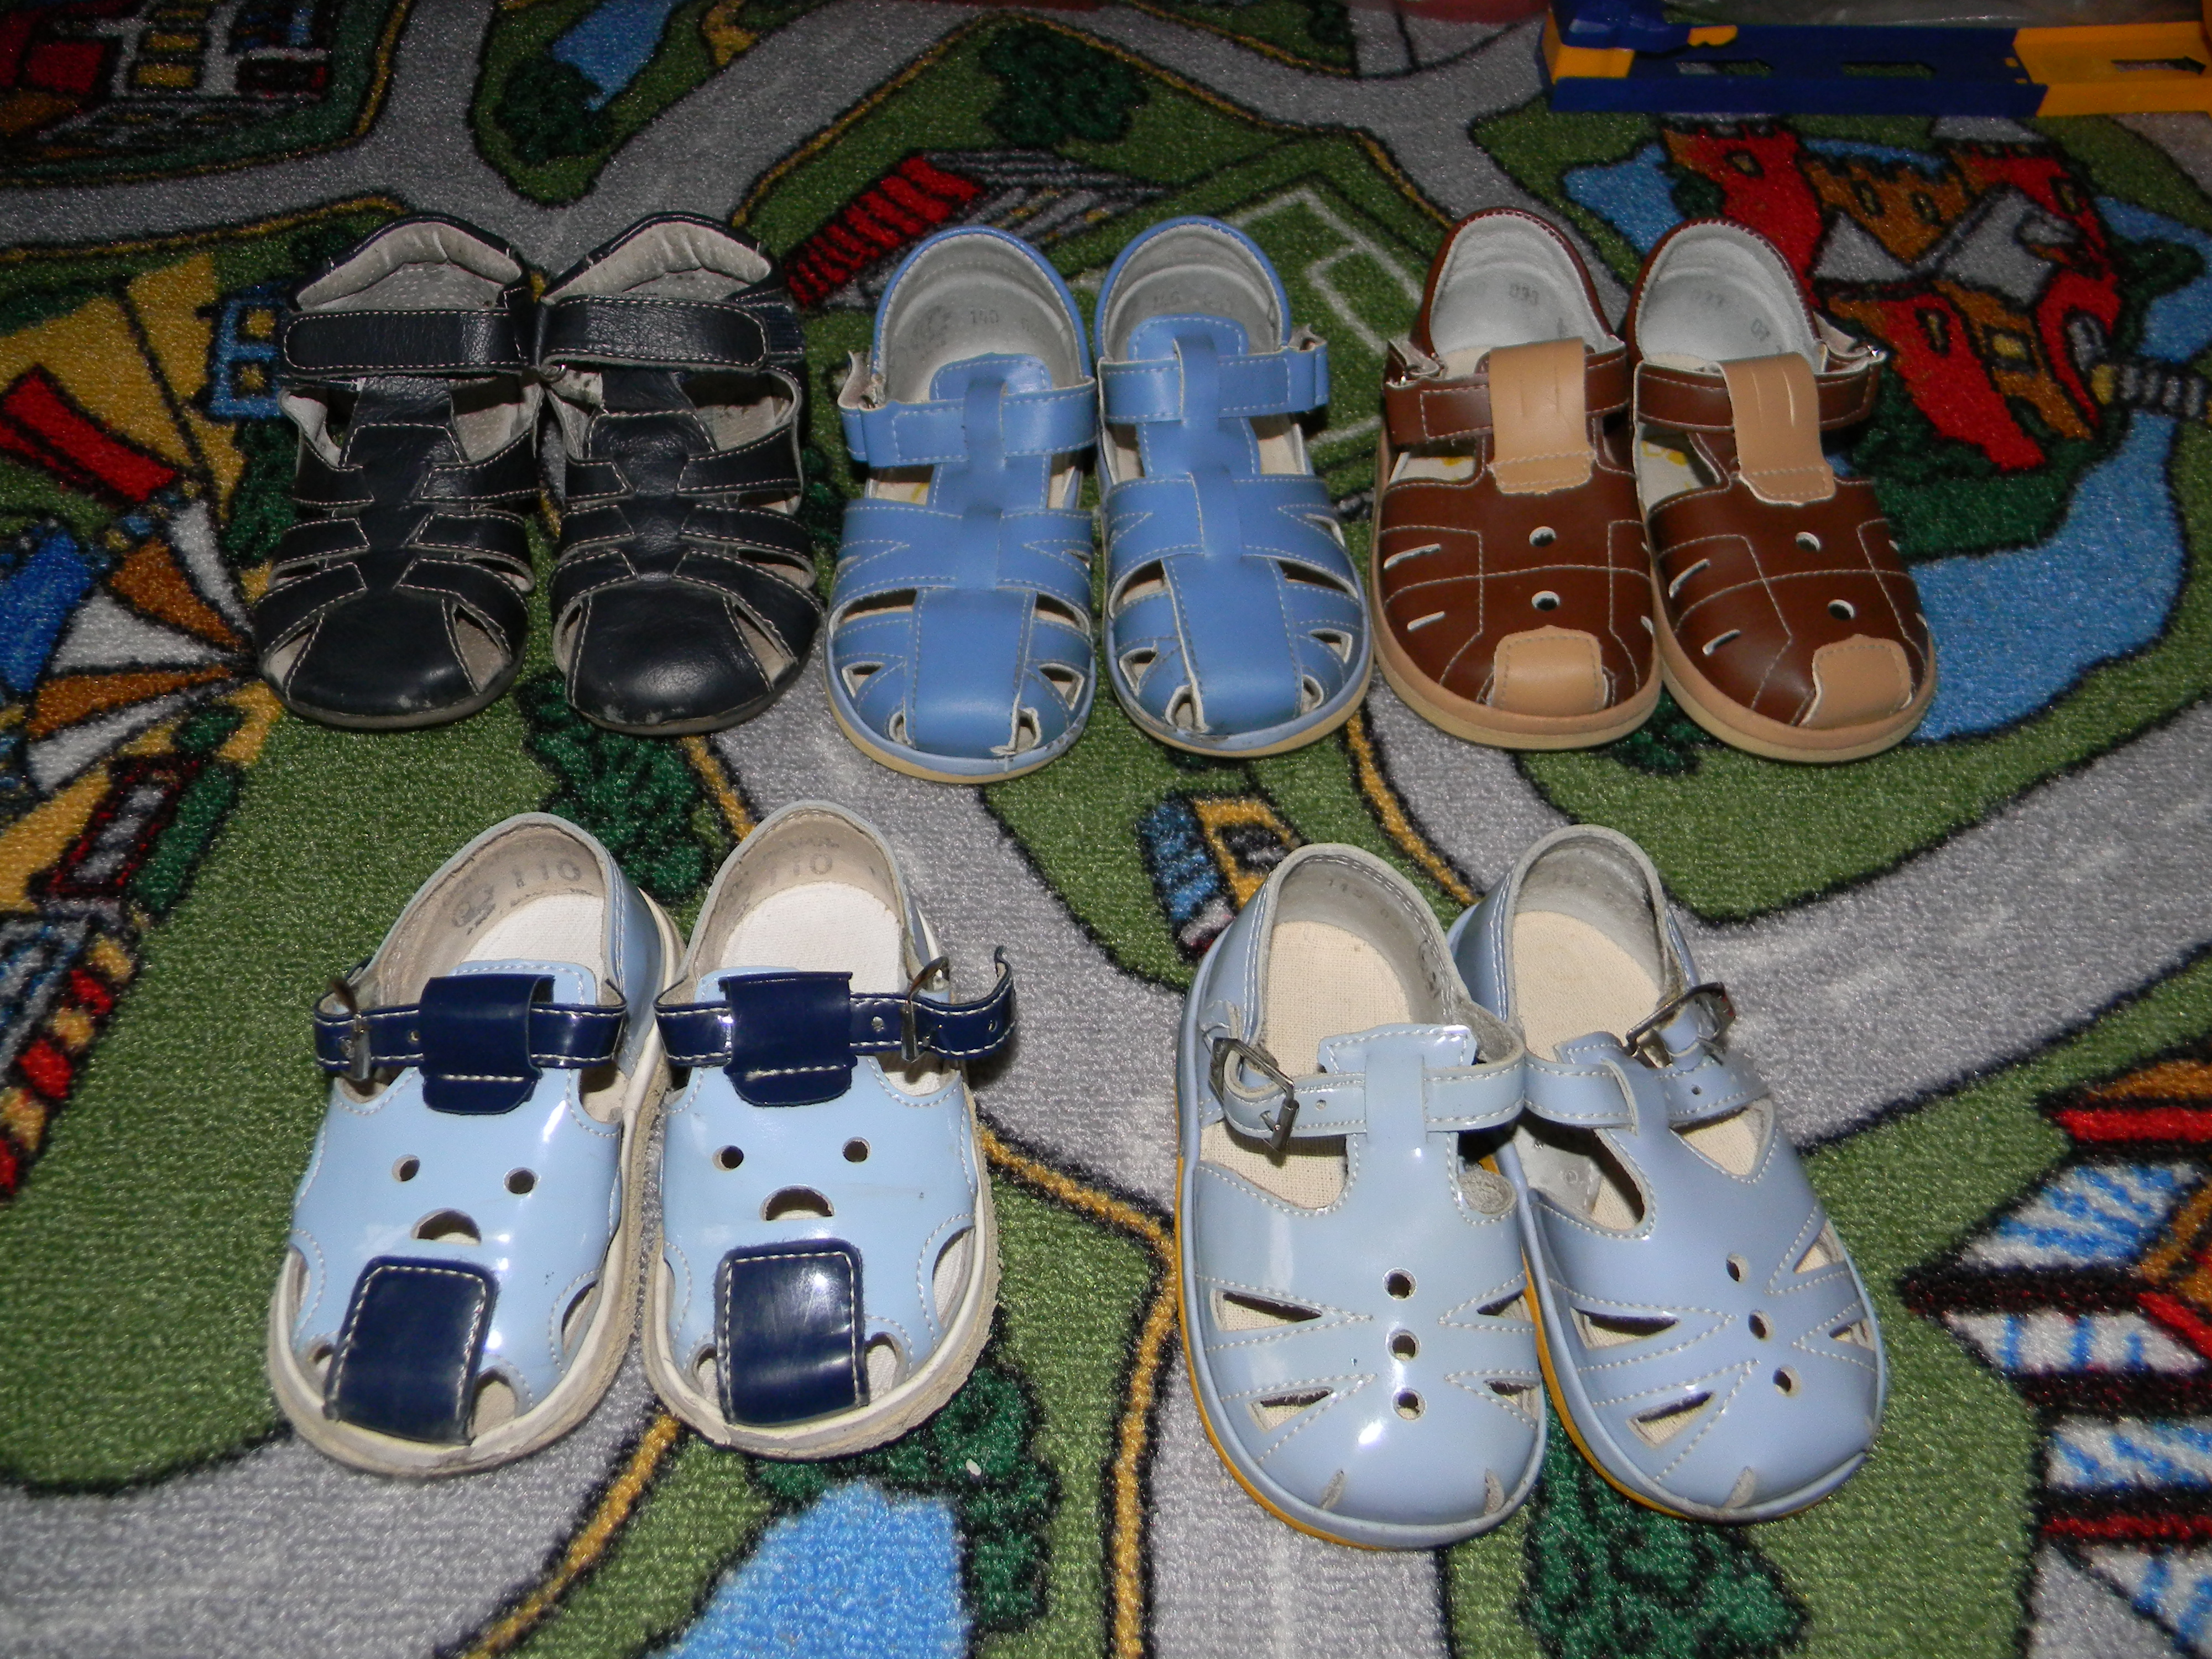 Купить Обувь В Ставрополе Мужские Детские